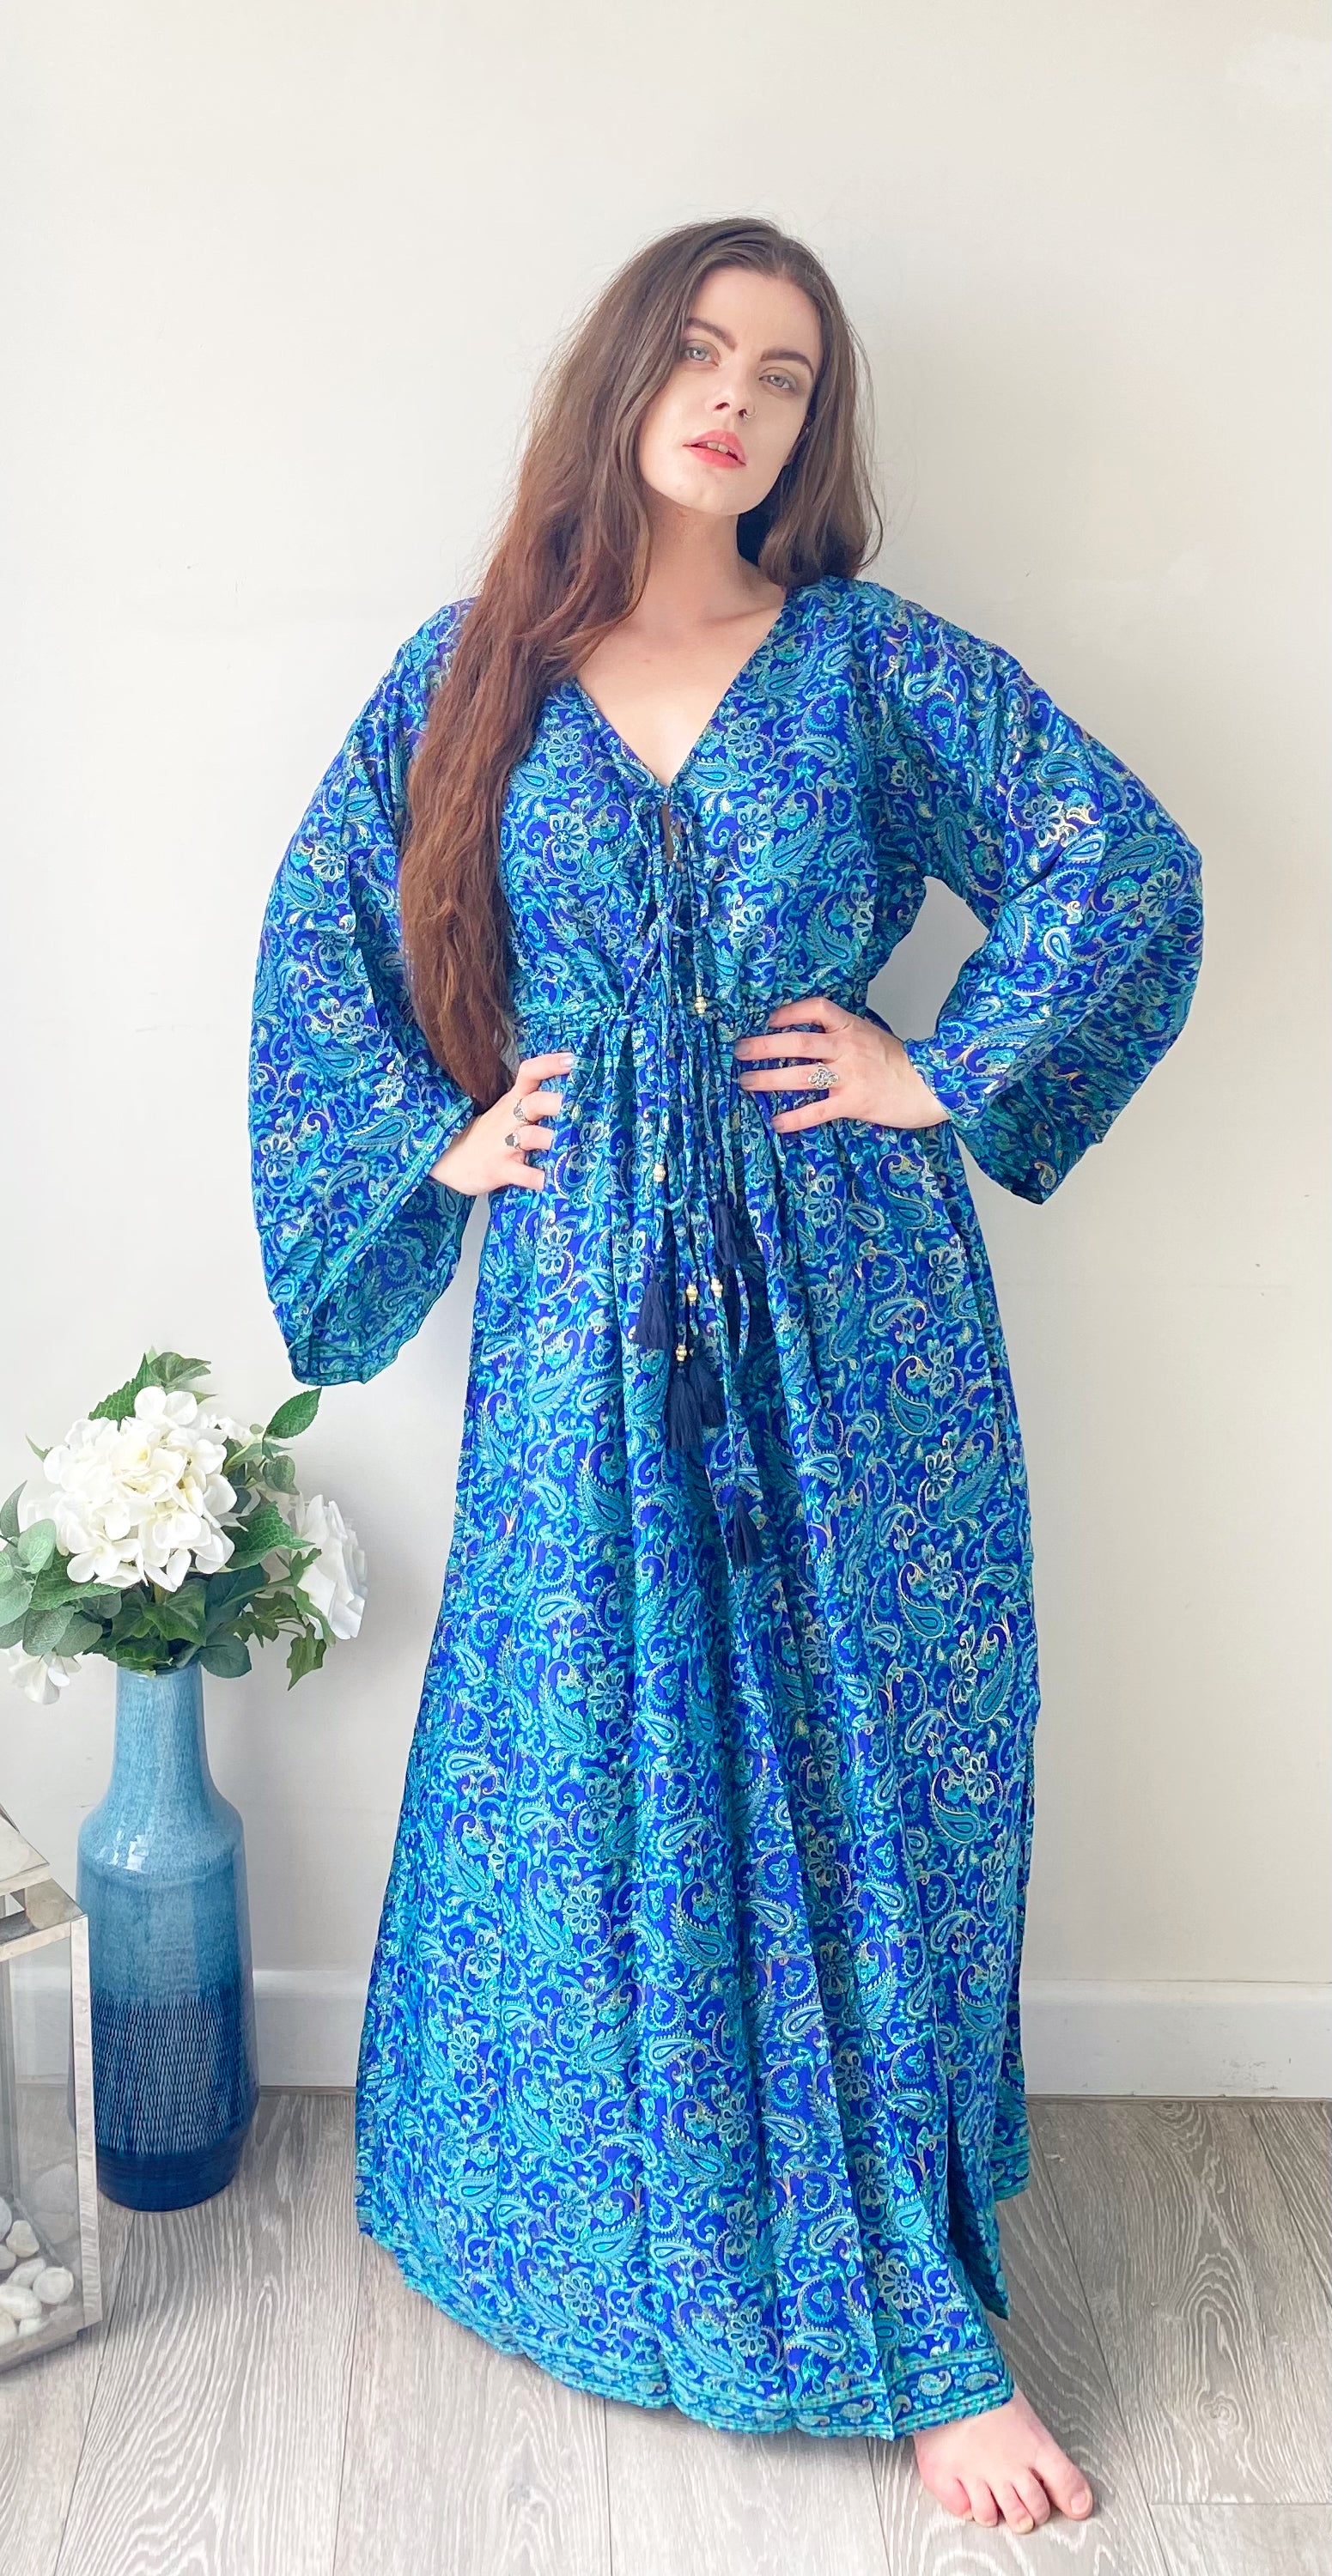 Nova royal-blue paisley-print silk maxi dress free size UK8-16DRESSES